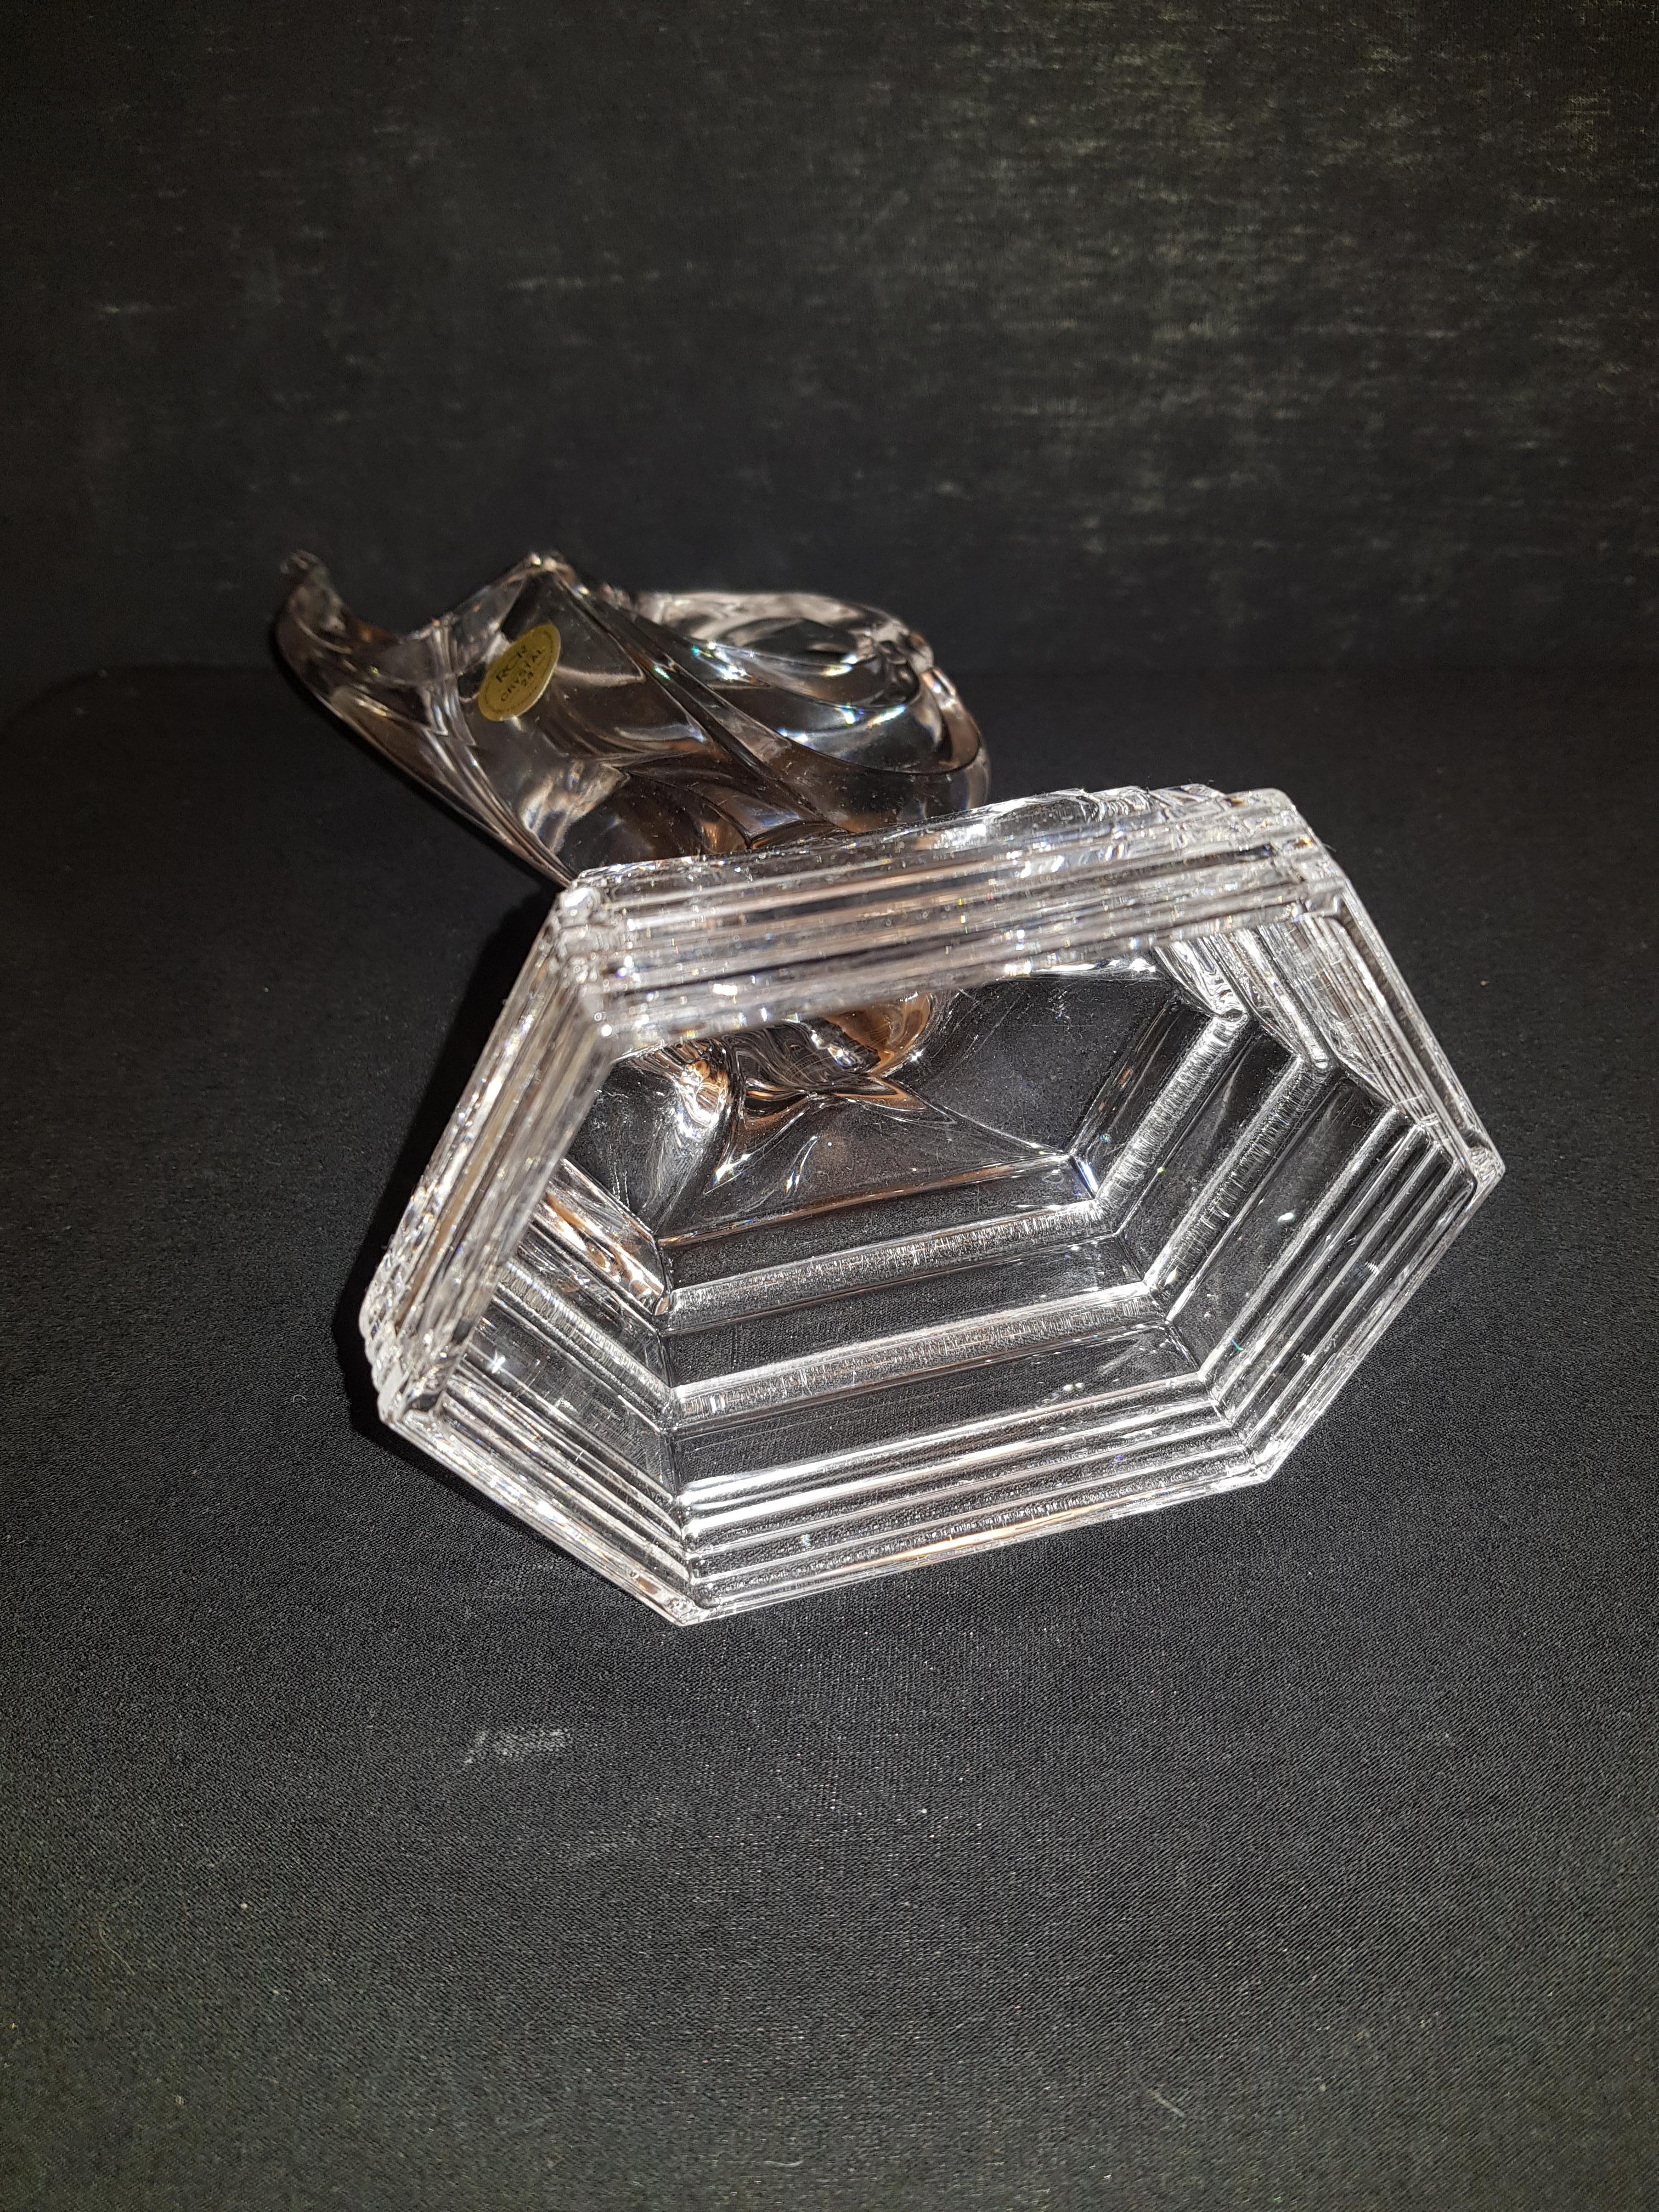 Other Large Vitange Royal Crystal Rock Sculptures For Sale